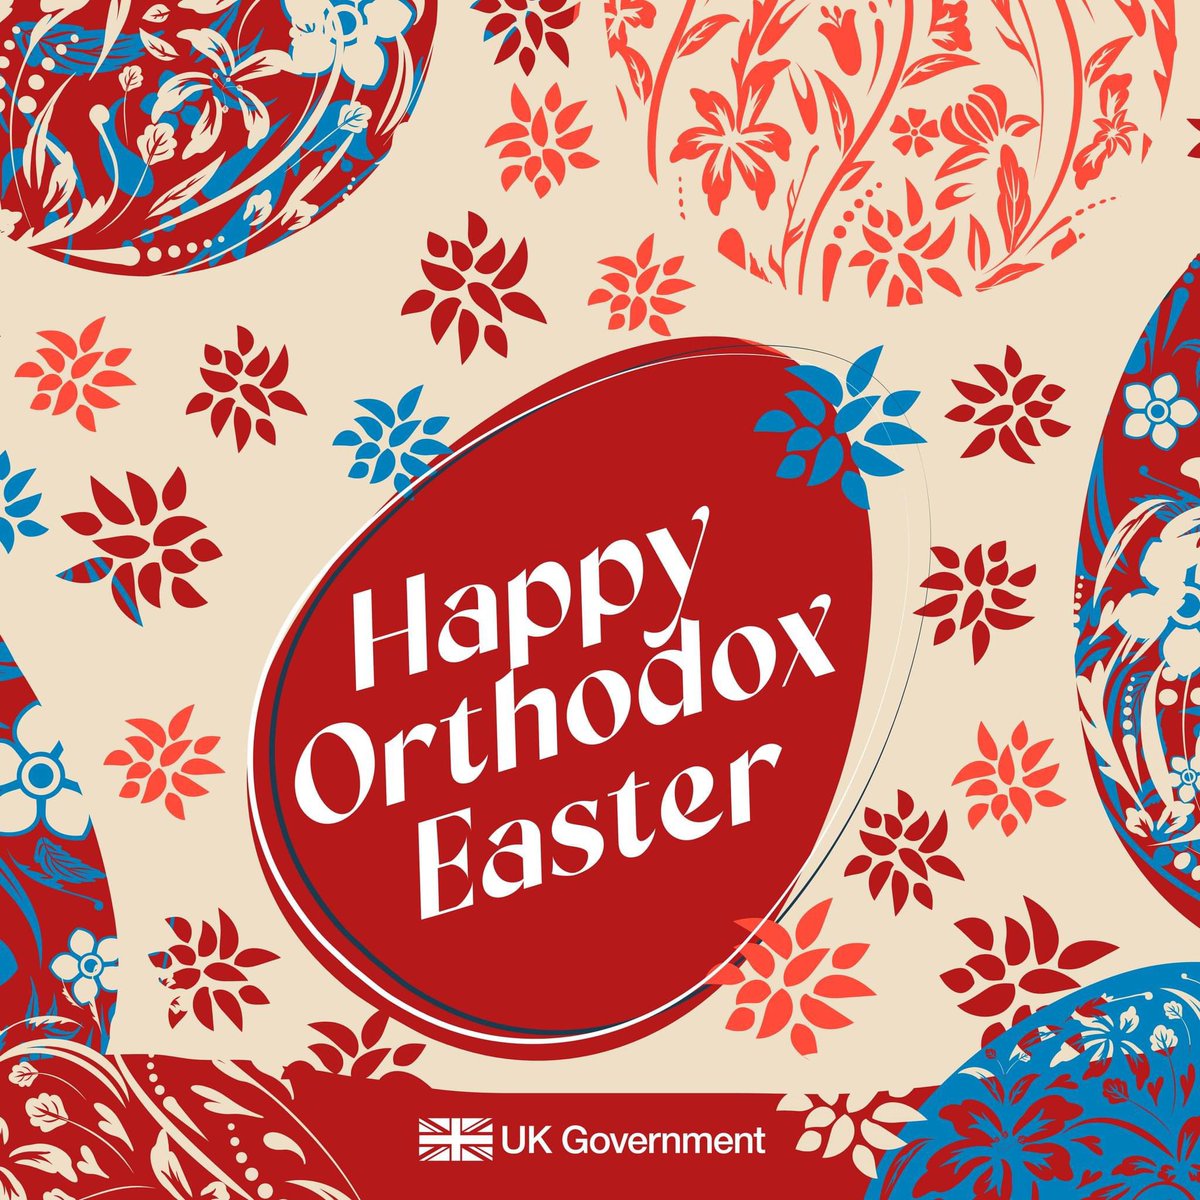 Srećan Vaskrs! #OrthodoxEaster 🪺